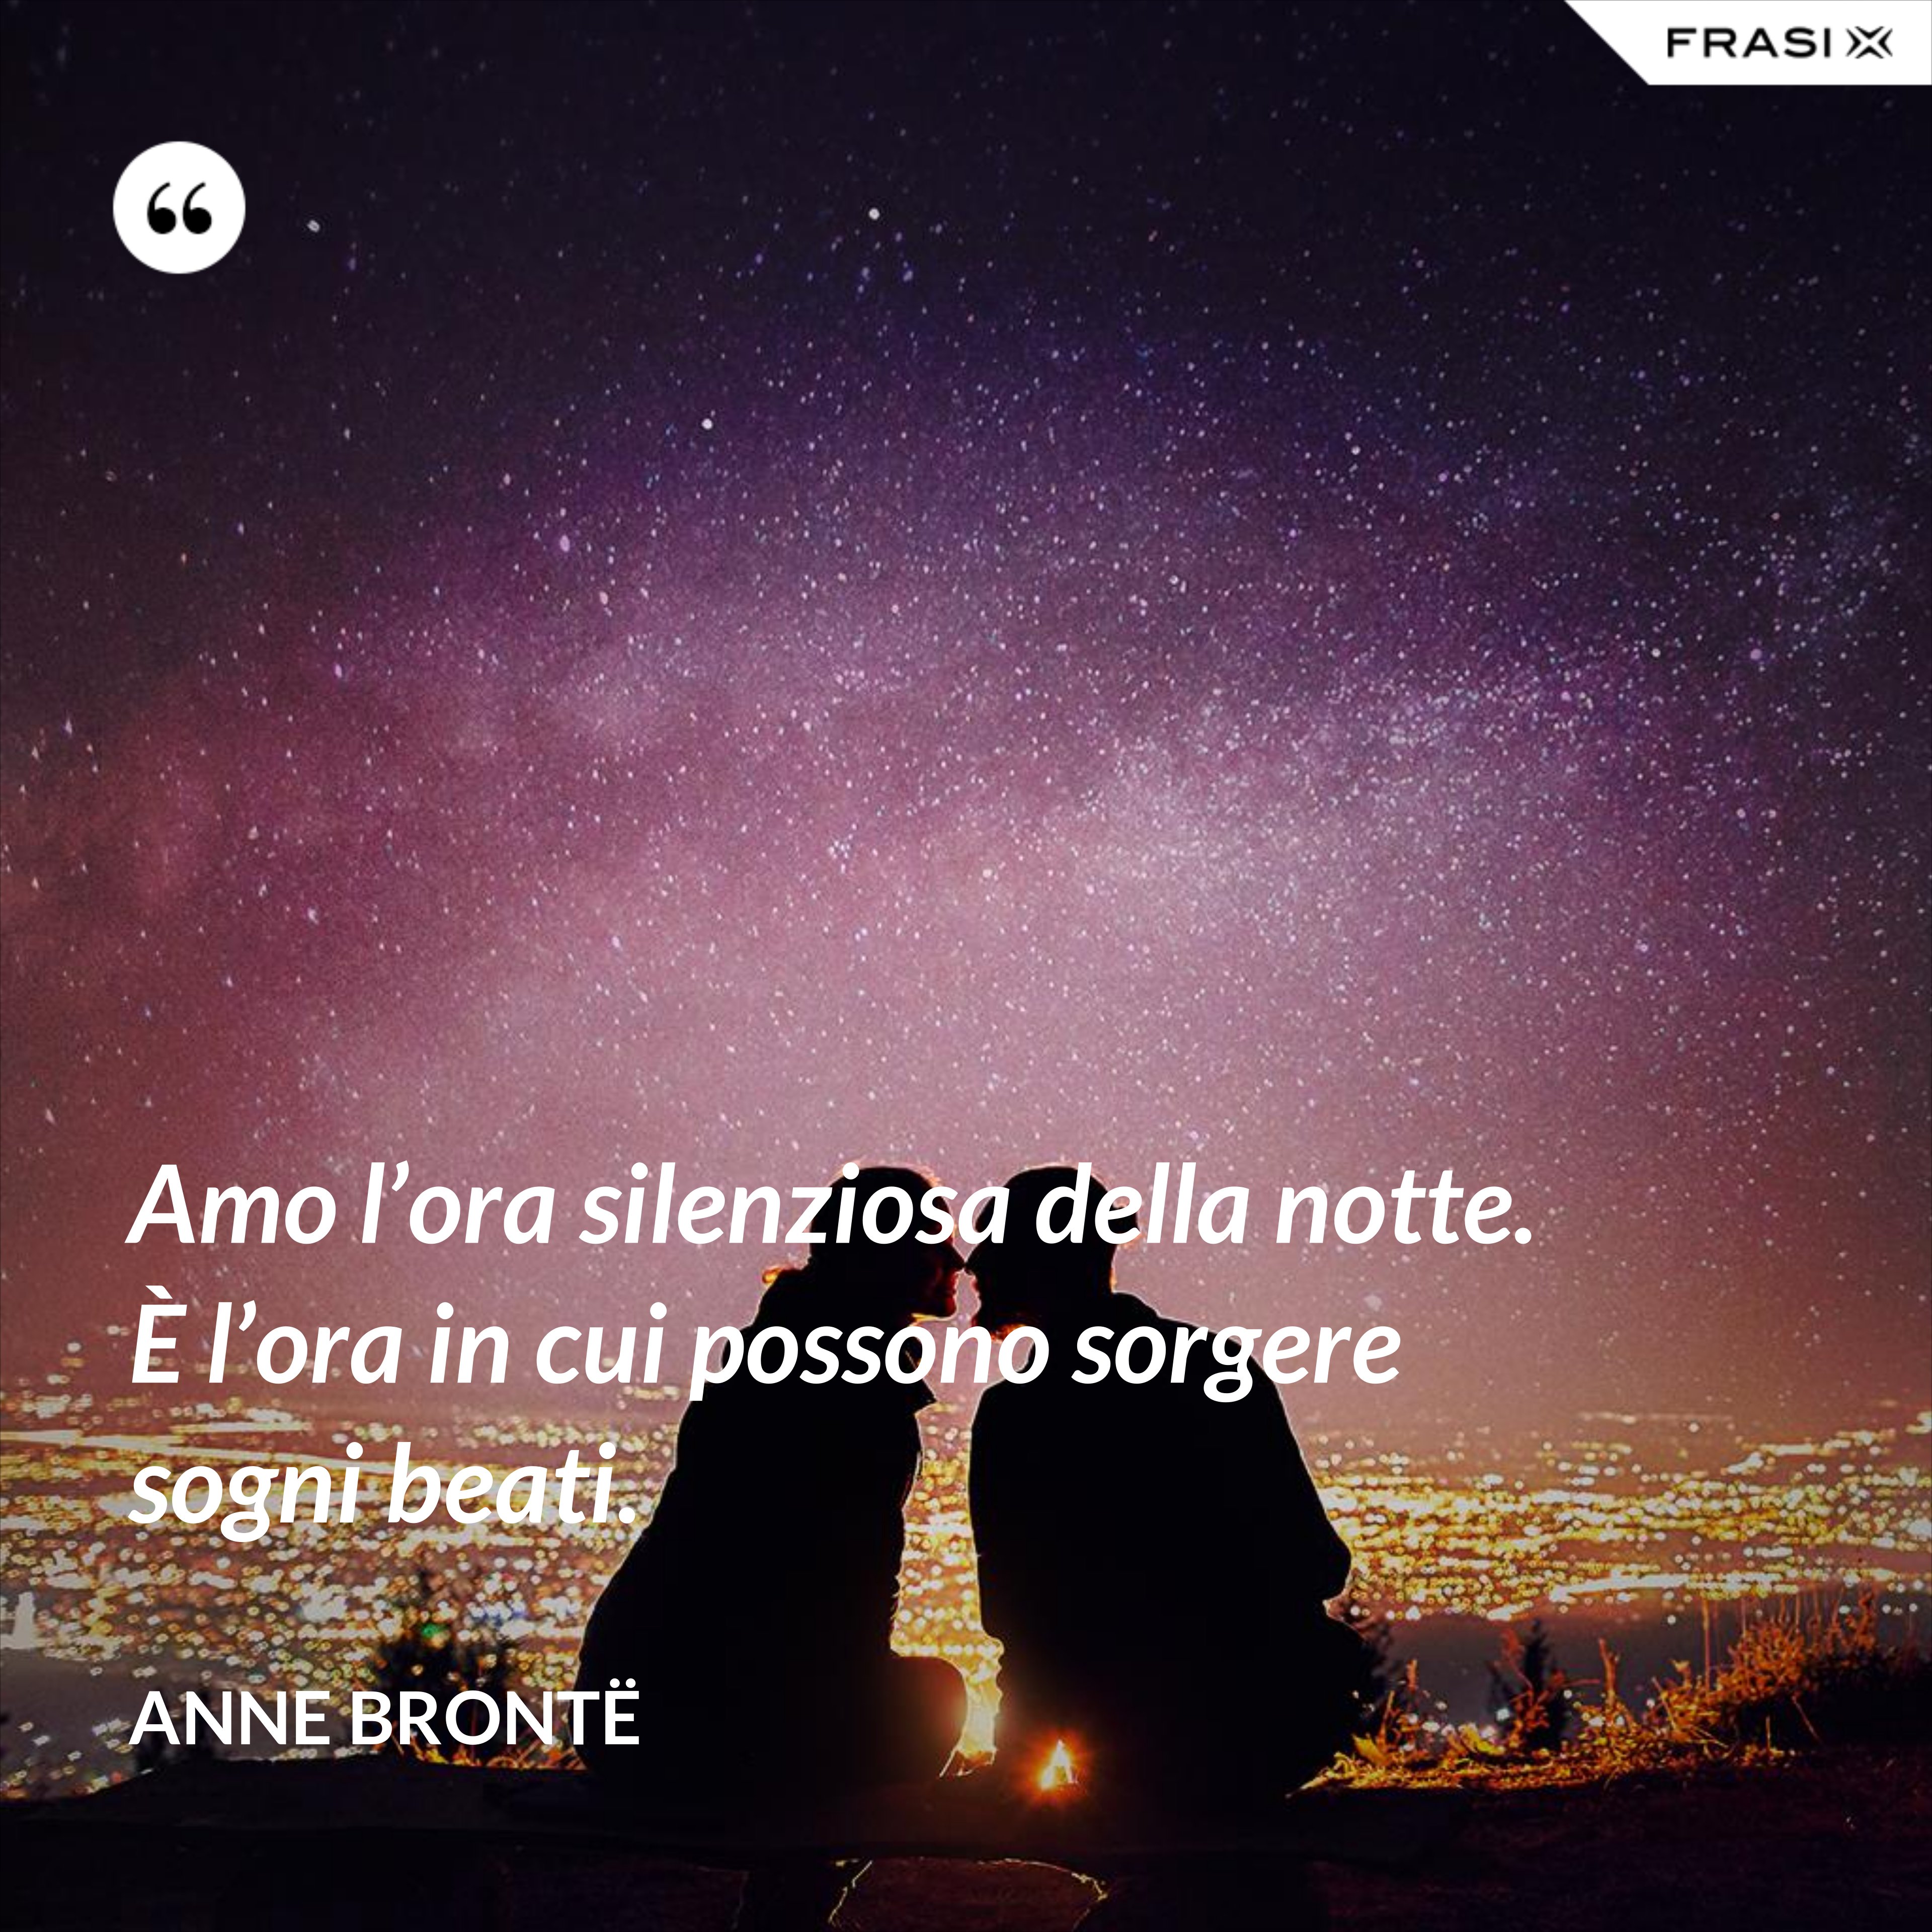 Amo l’ora silenziosa della notte. È l’ora in cui possono sorgere sogni beati. - Anne Brontë